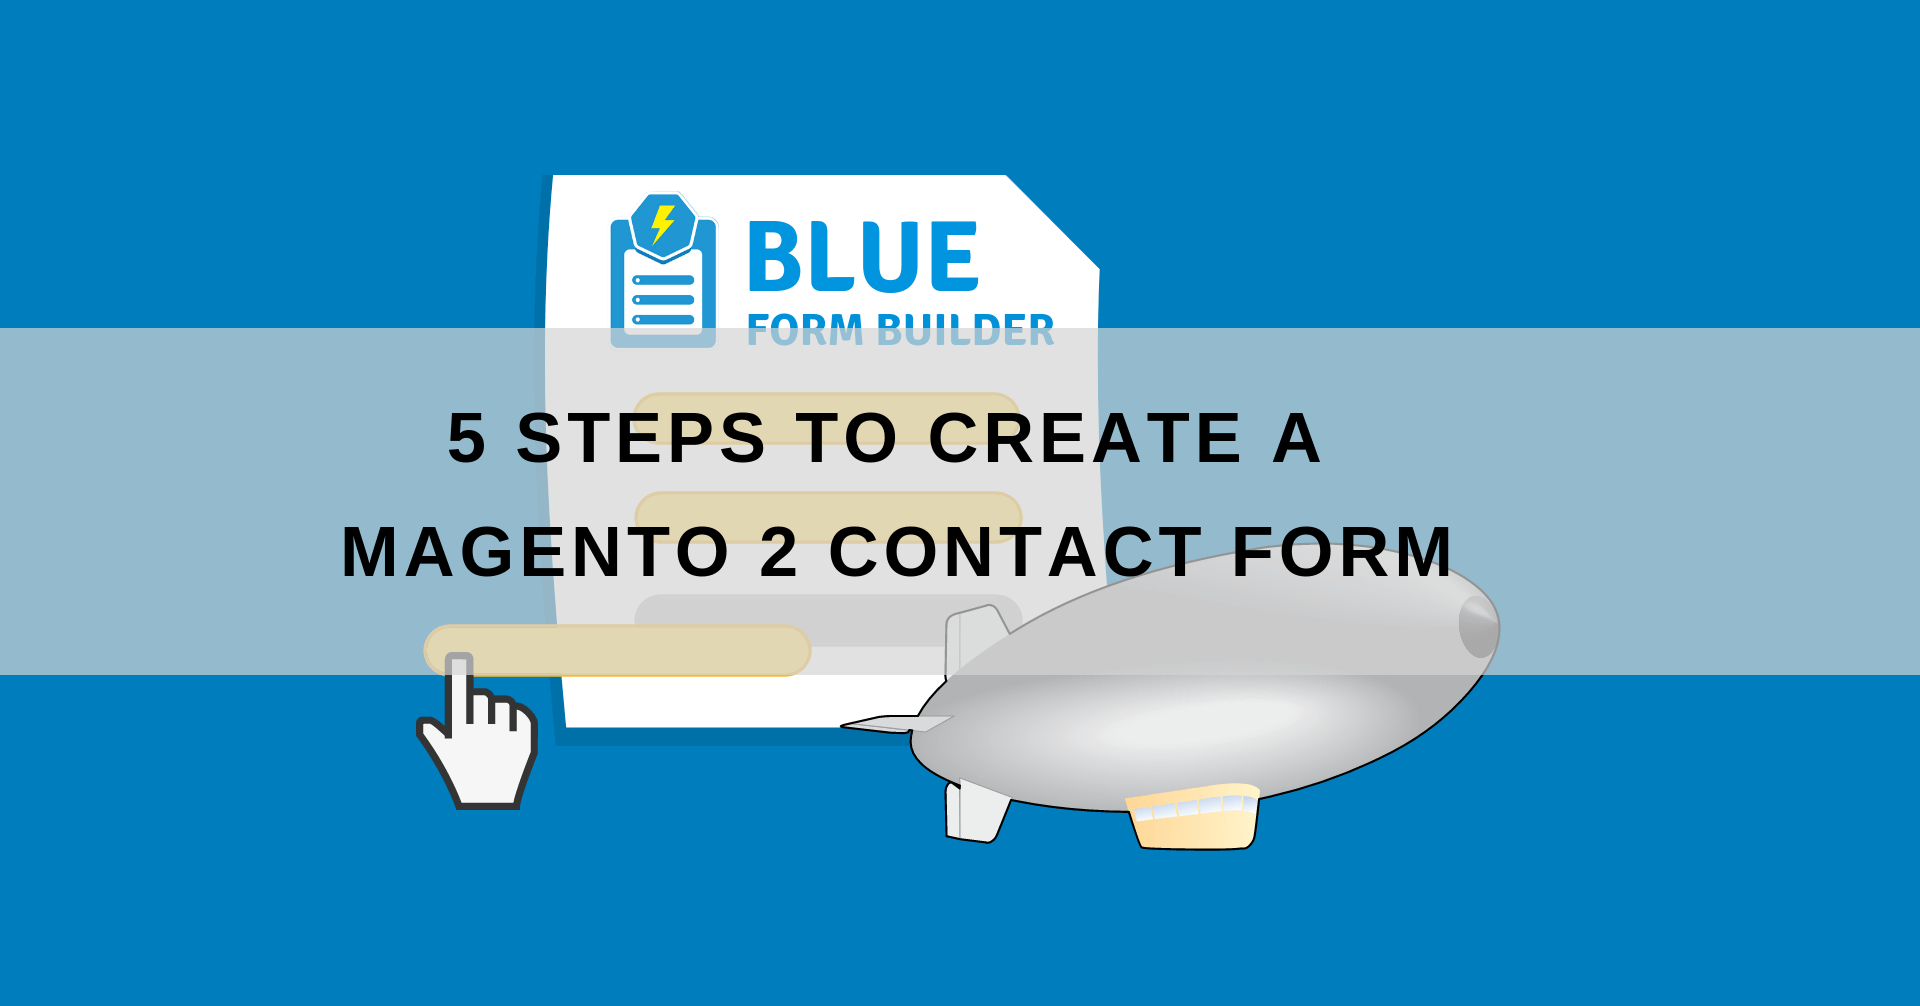 Magento 2 contact form